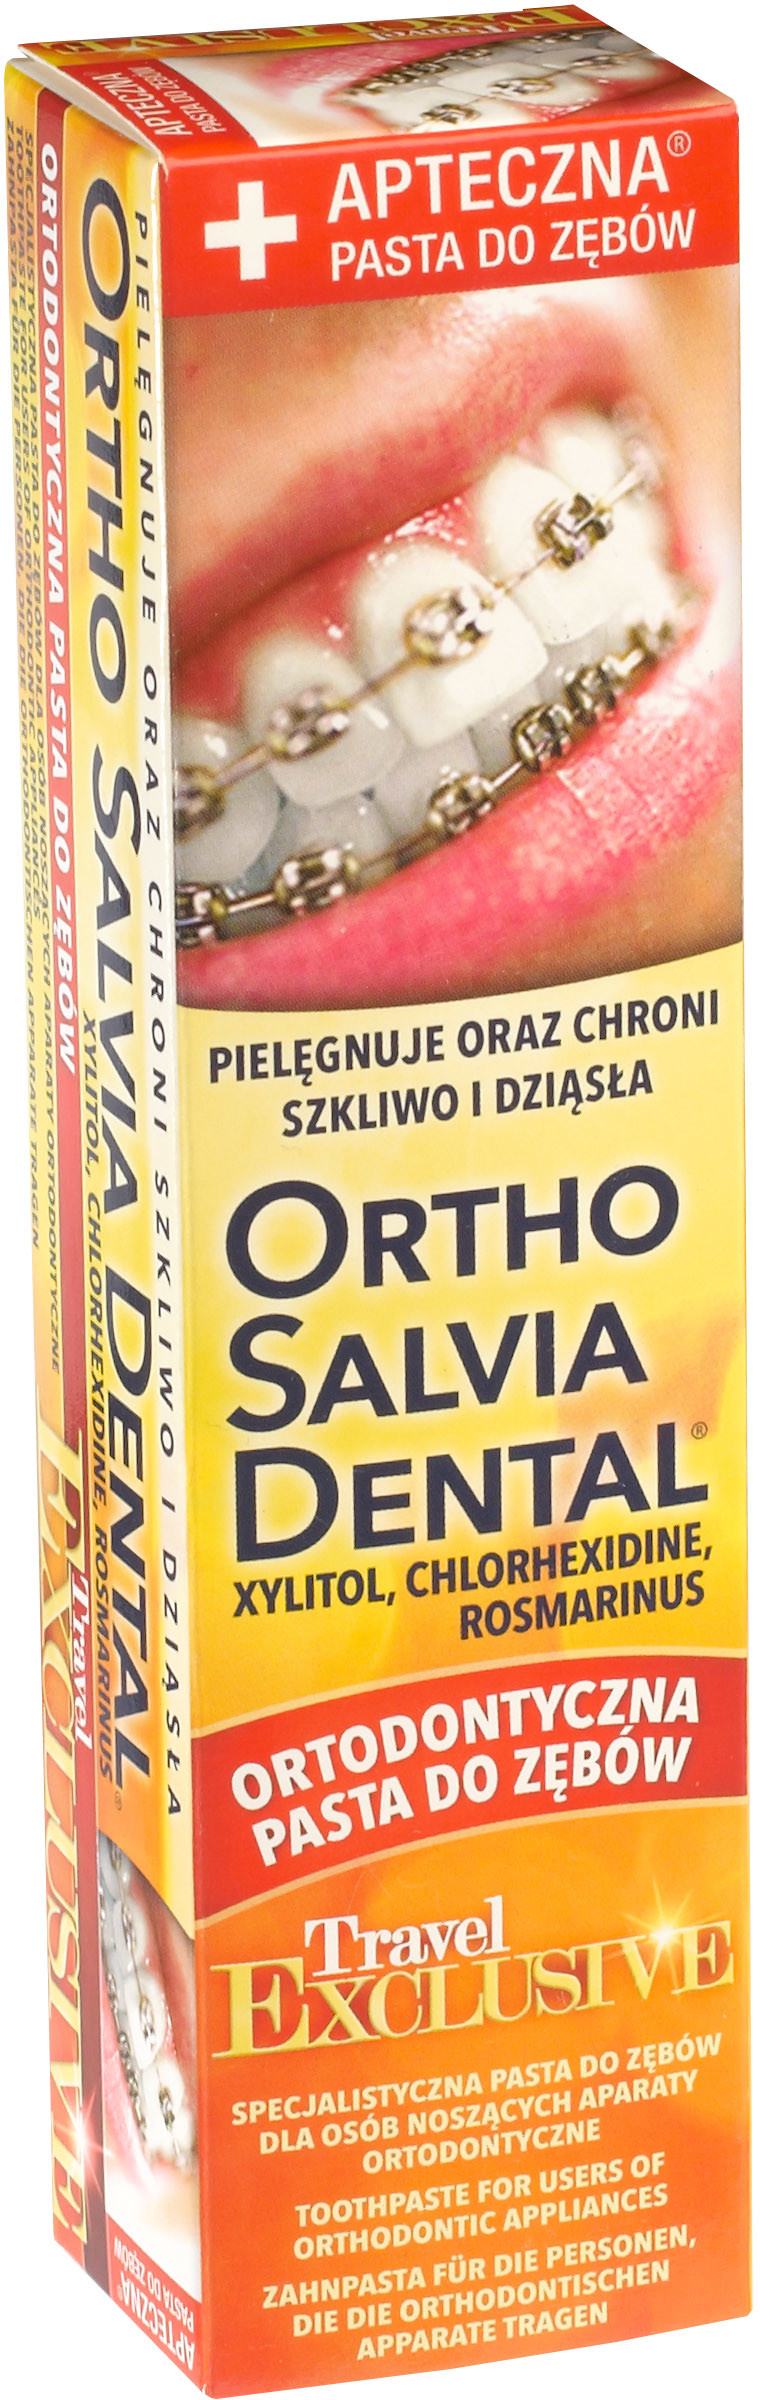 Atos Pasta do zębów Ortho Salvia Dental Exclusive Travel